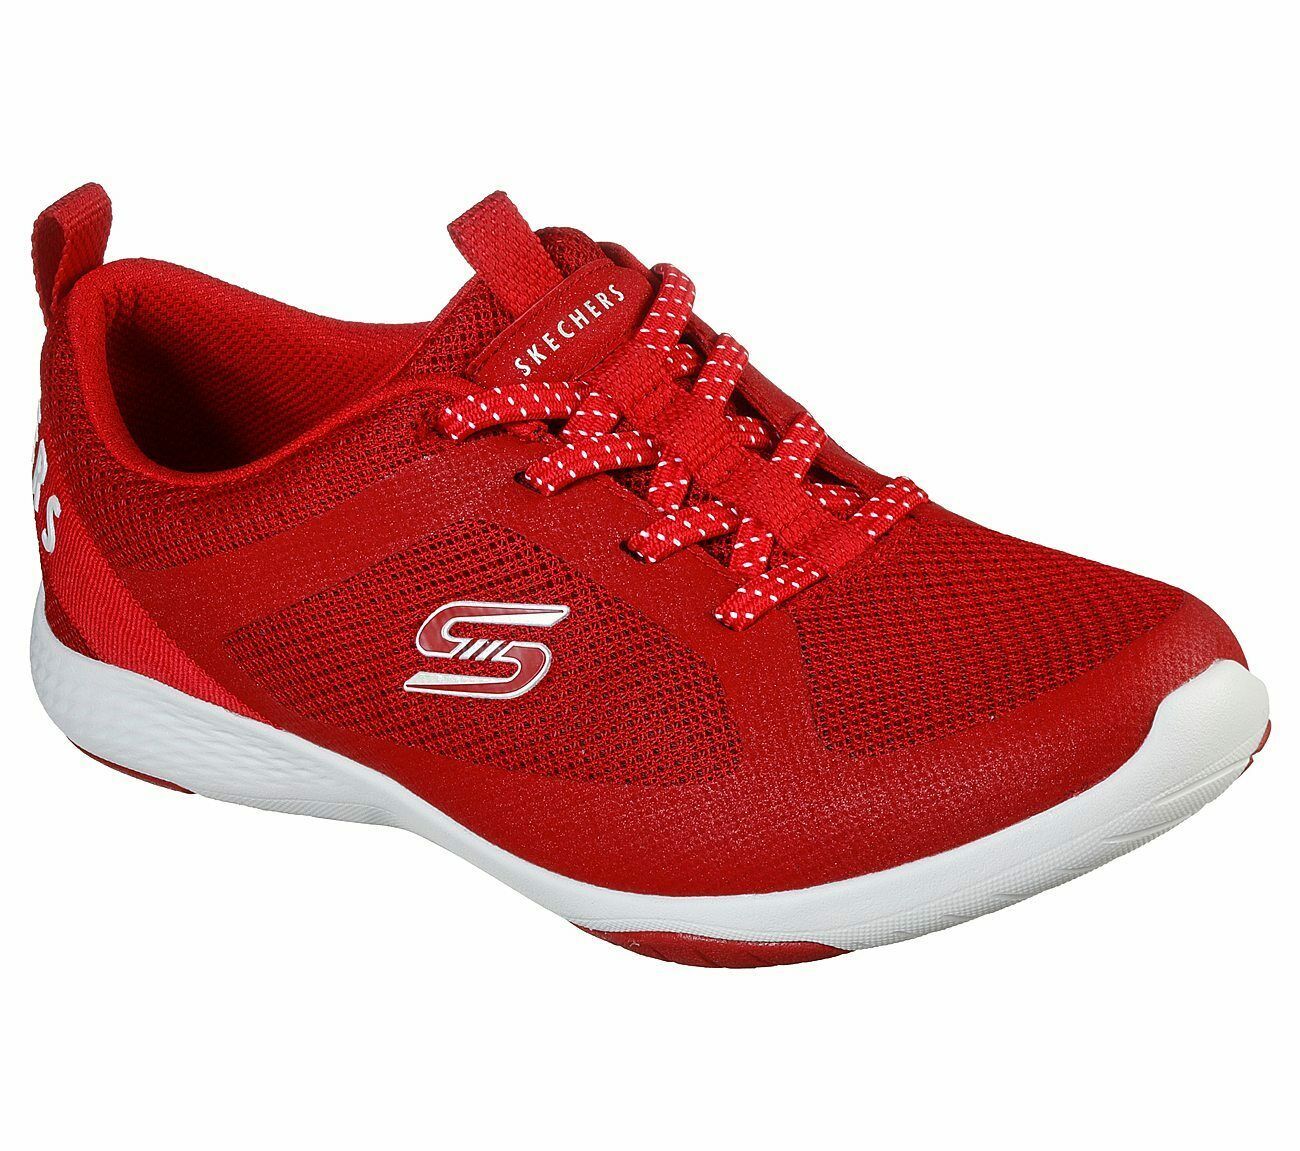 Skechers Red Shoes Memory Foam Women Slip On Comfort Casual Sport ...